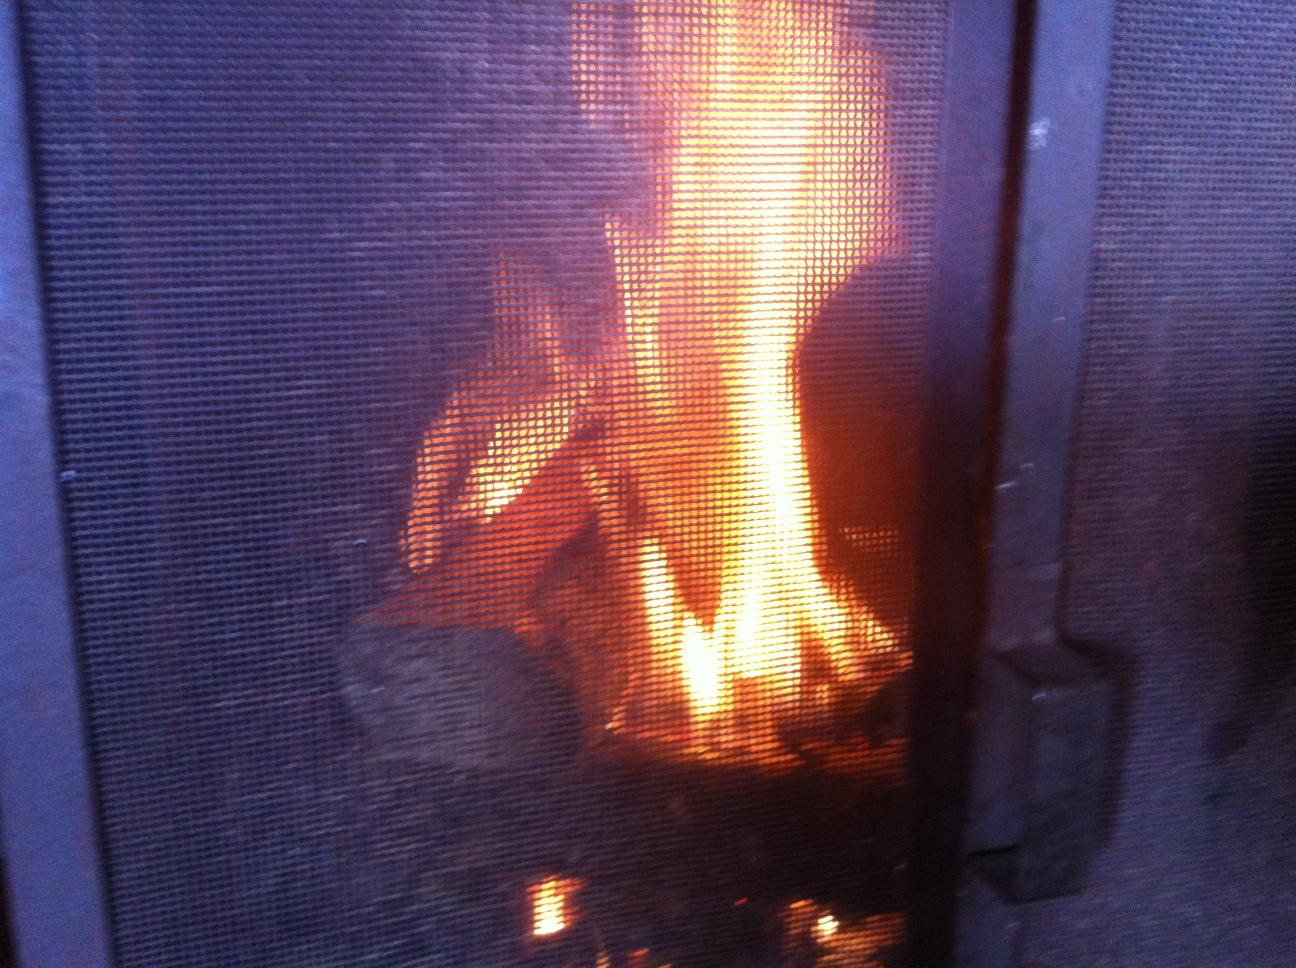 Kallt i Jämtland. Tur man kan elda. Gjorde upp eld i braskaminen, Sandviken Strömsundskommun.